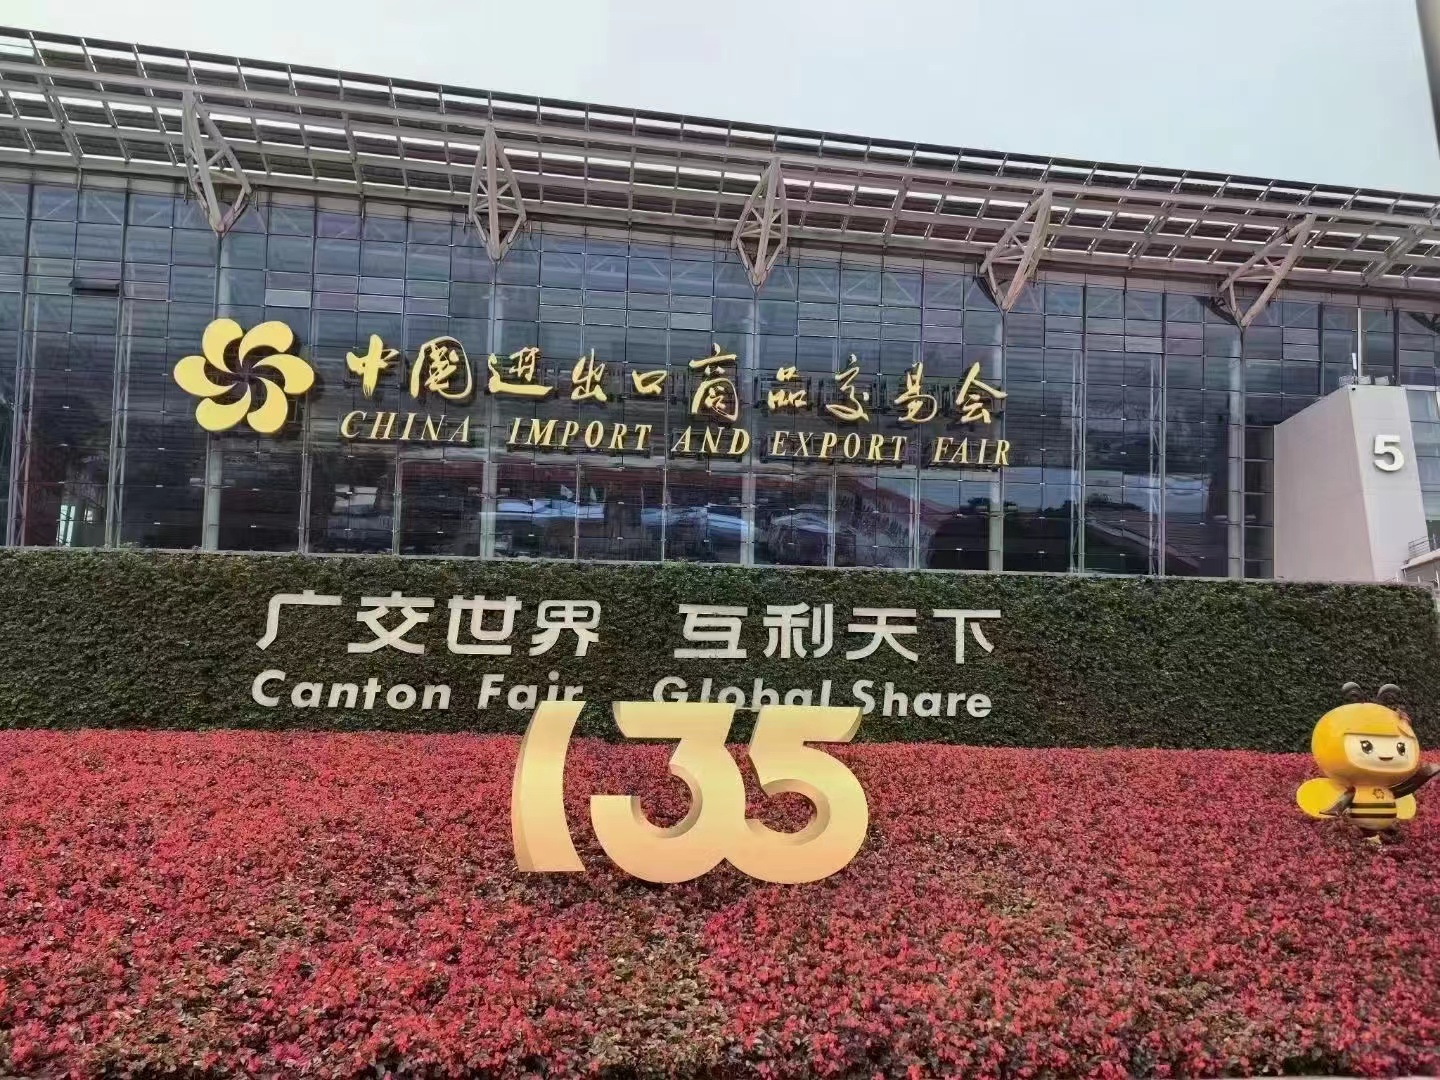 Benvenuti à a 135a Fiera di Canton è aspettatevi di scuntràvi in ​​Guangzhou